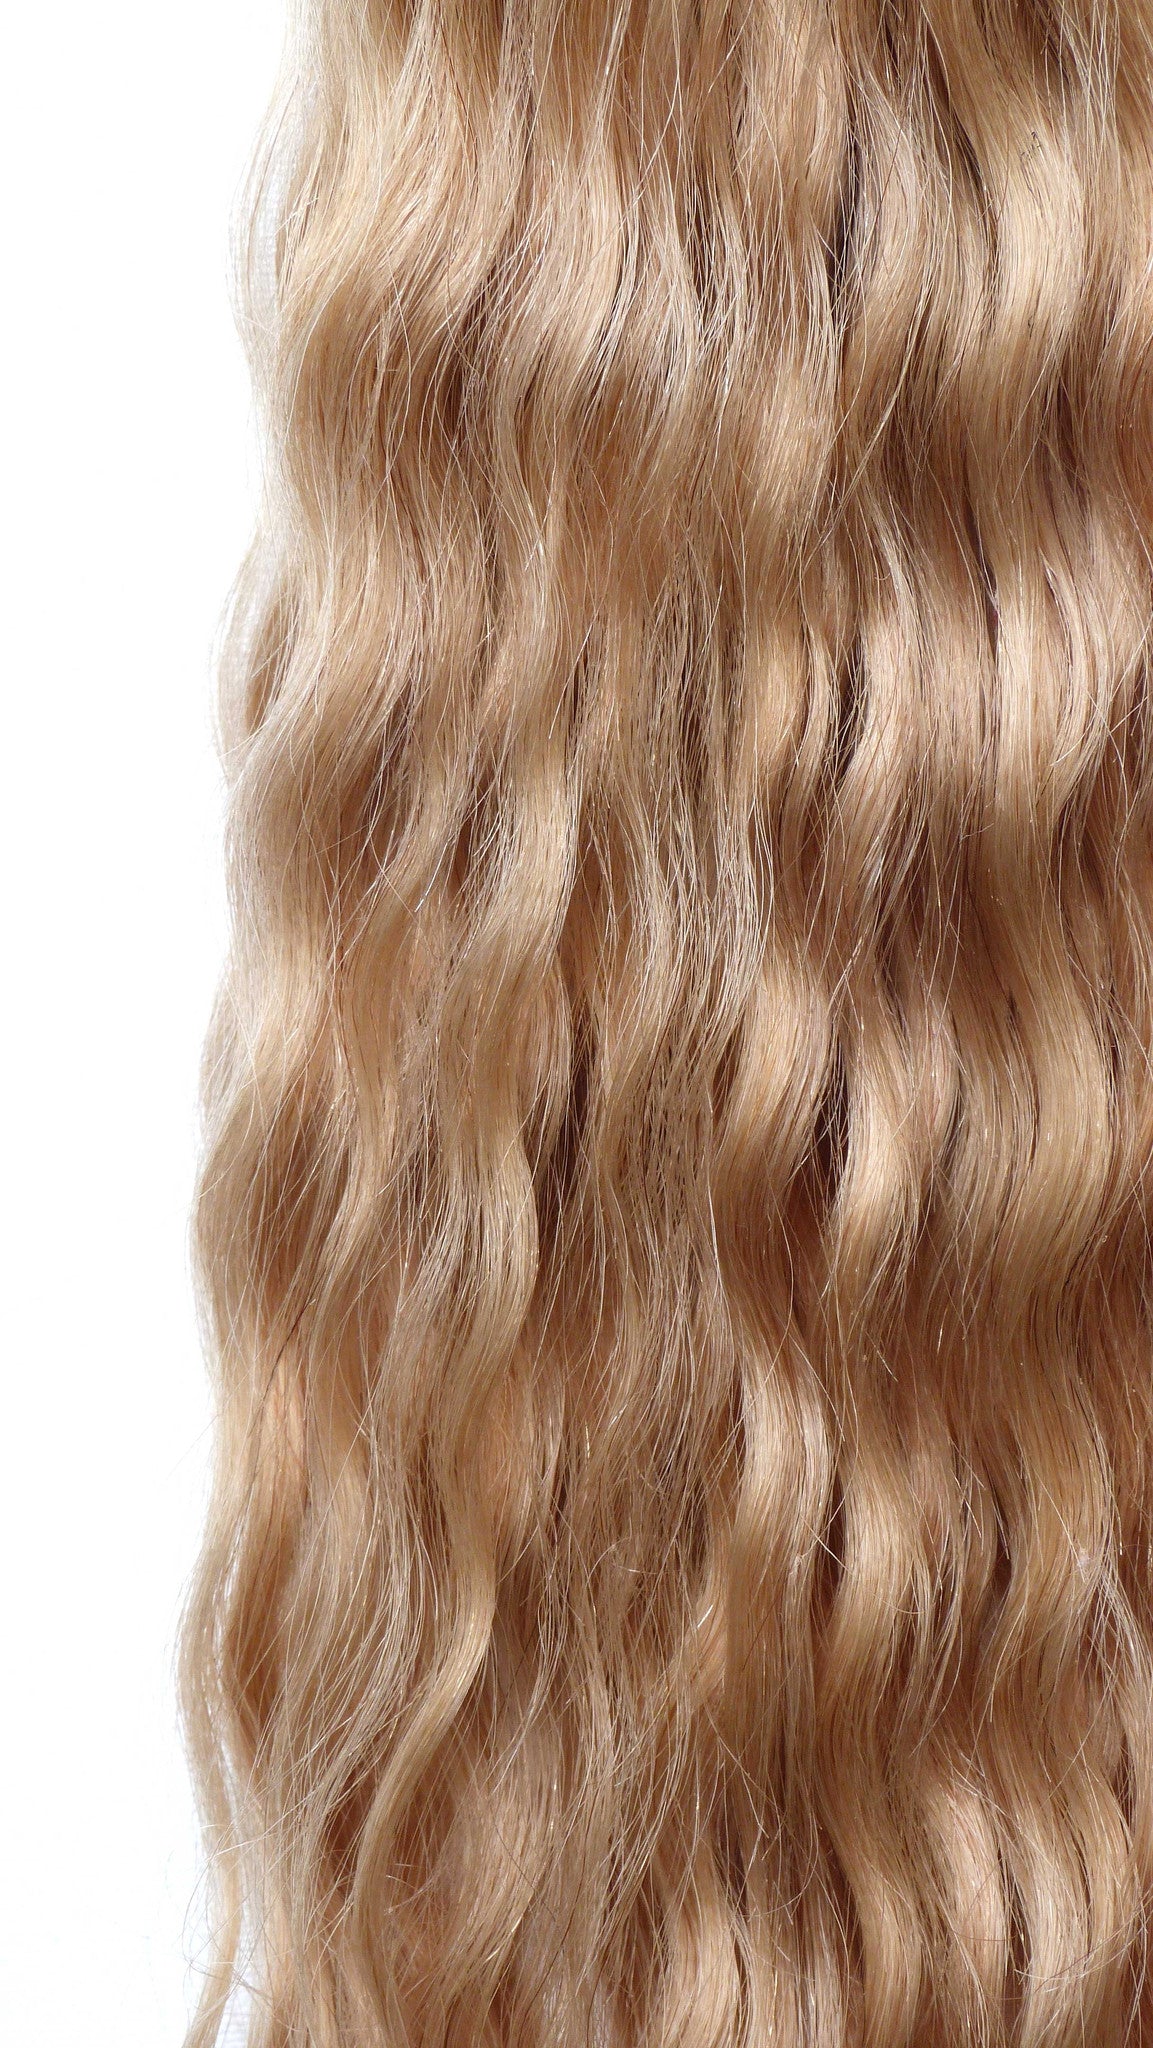 Extensions de cheveux humains vierges brésiliens - extensions à micro-boucles - cheveux vierges et beauté, les meilleures extensions de cheveux, de vrais cheveux humains vierges.